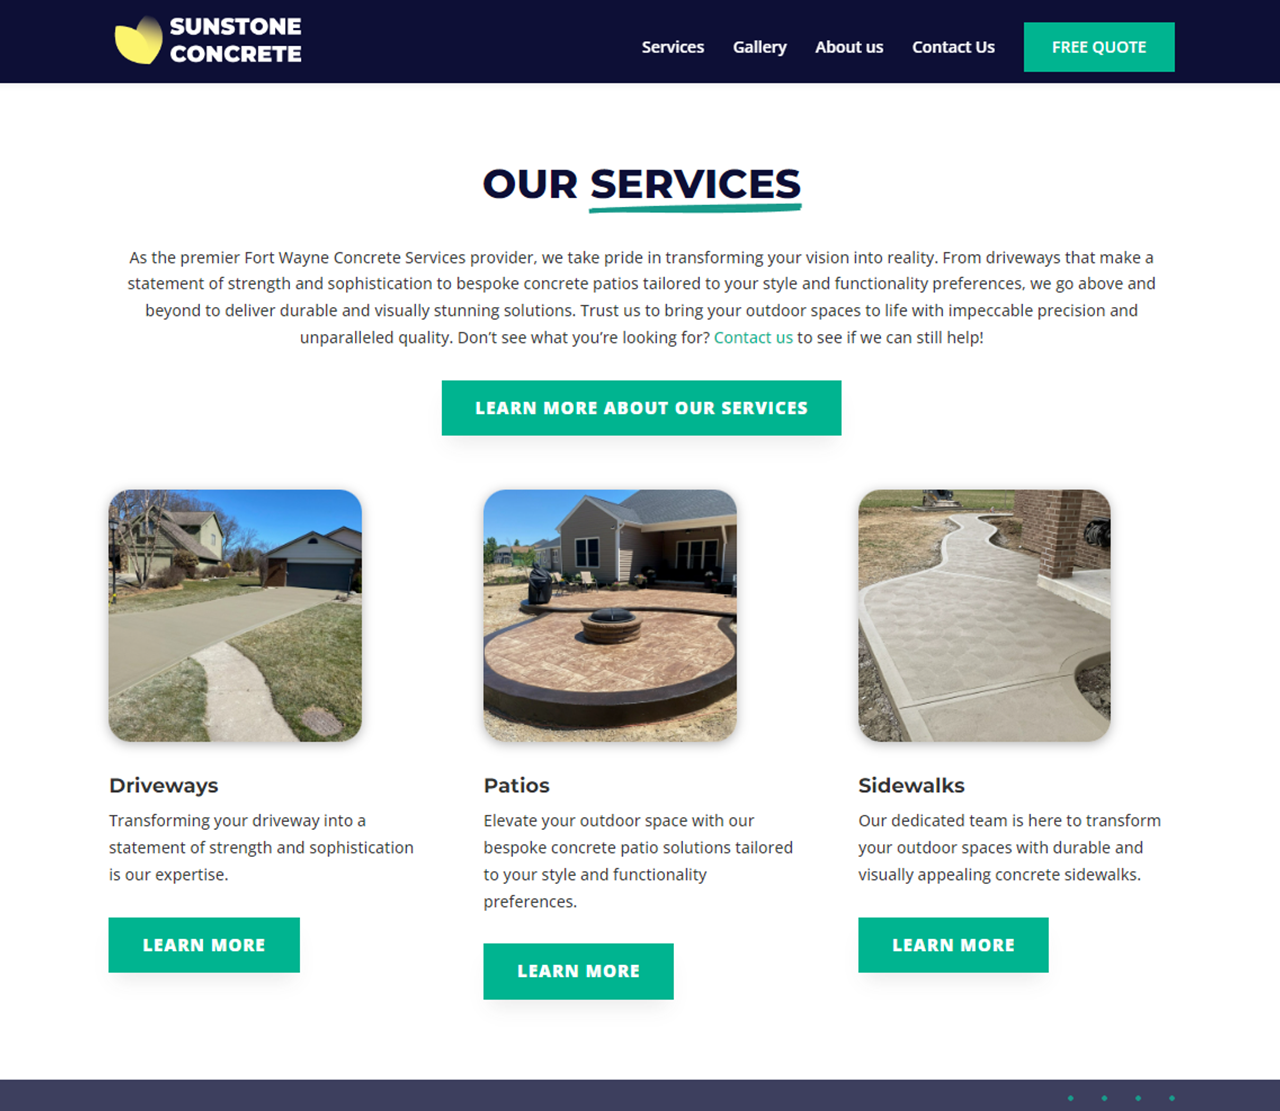 Sunstone Concrete Website Services Section Thumbnail